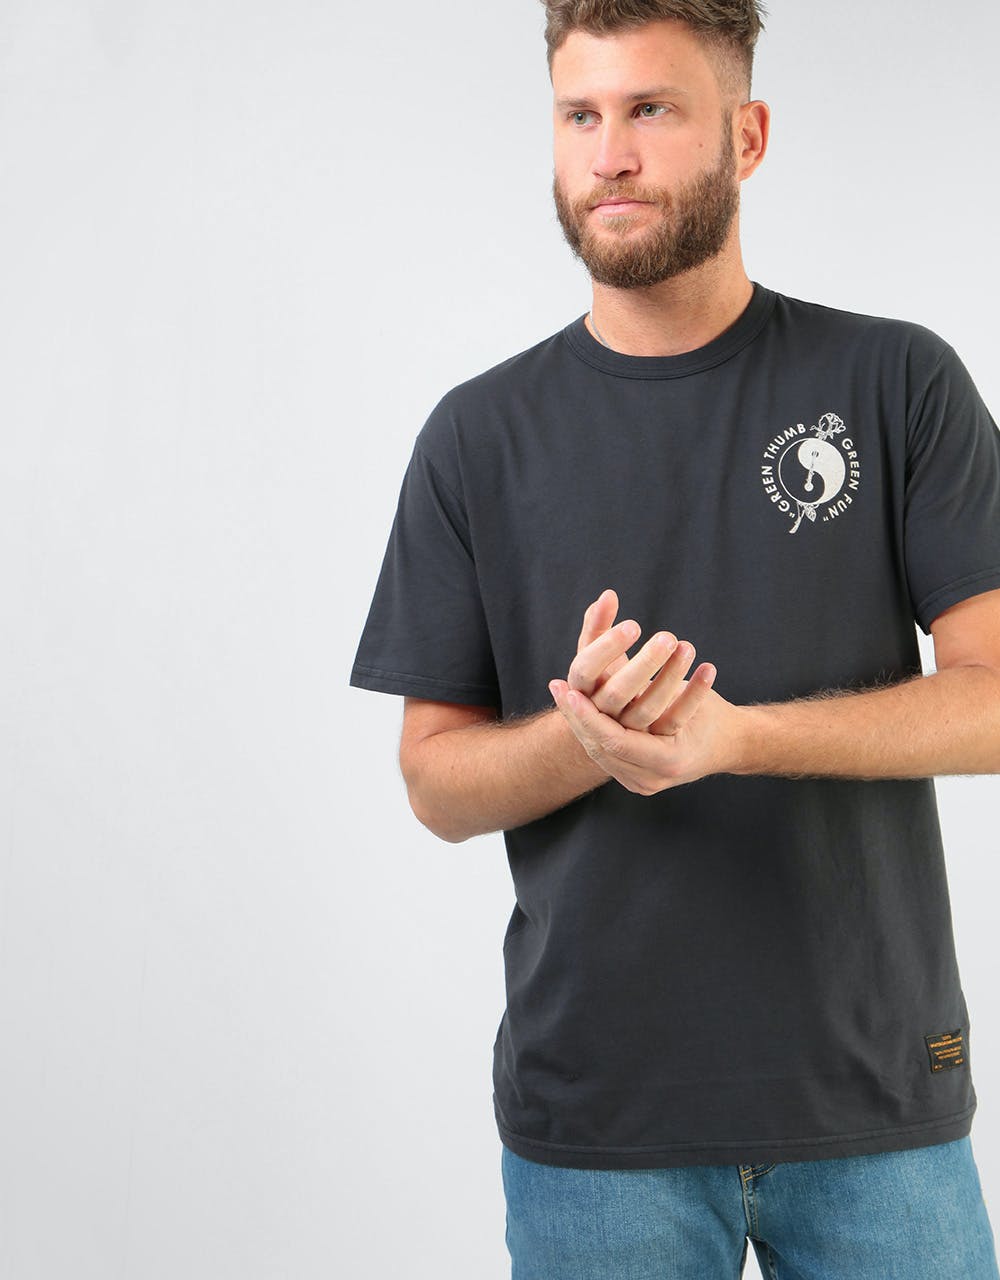 Levi's Skateboarding Graphic S/S T-Shirt - Green Thumb/Jet Black Multi